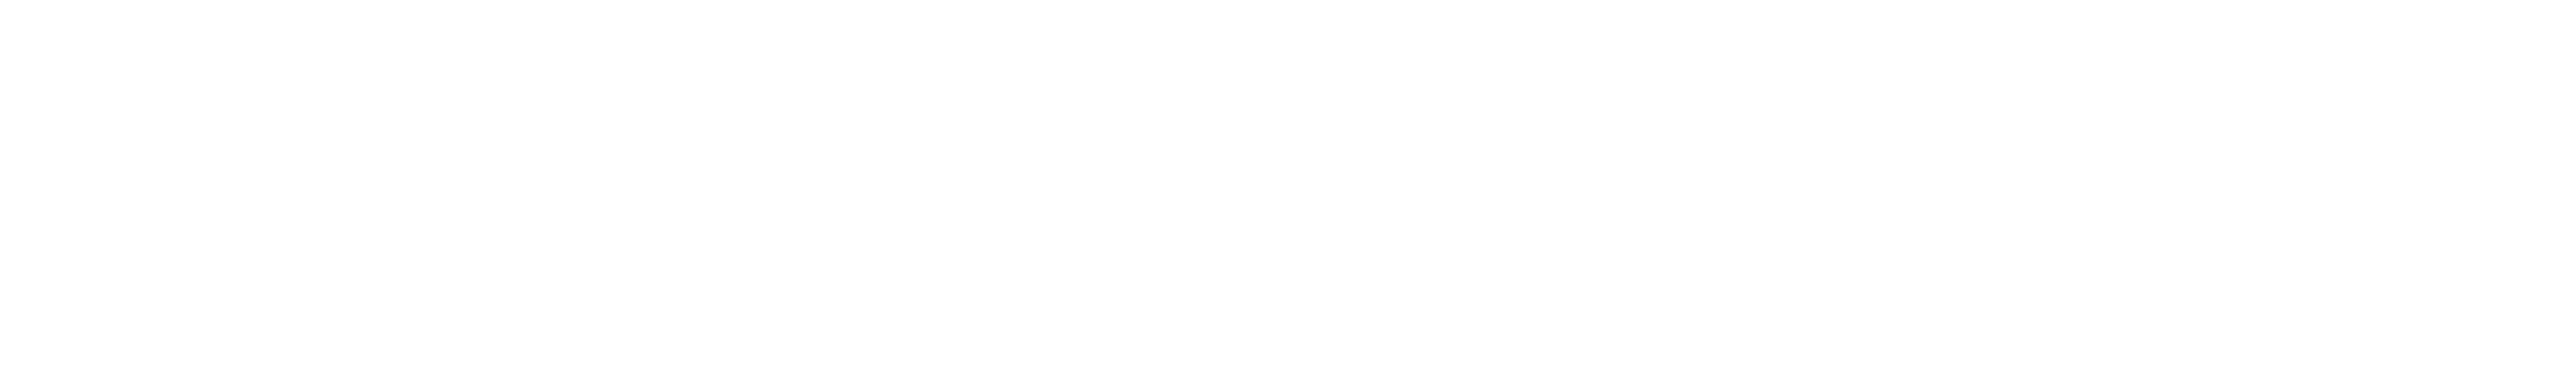 PUBLIKUM-Logo_white